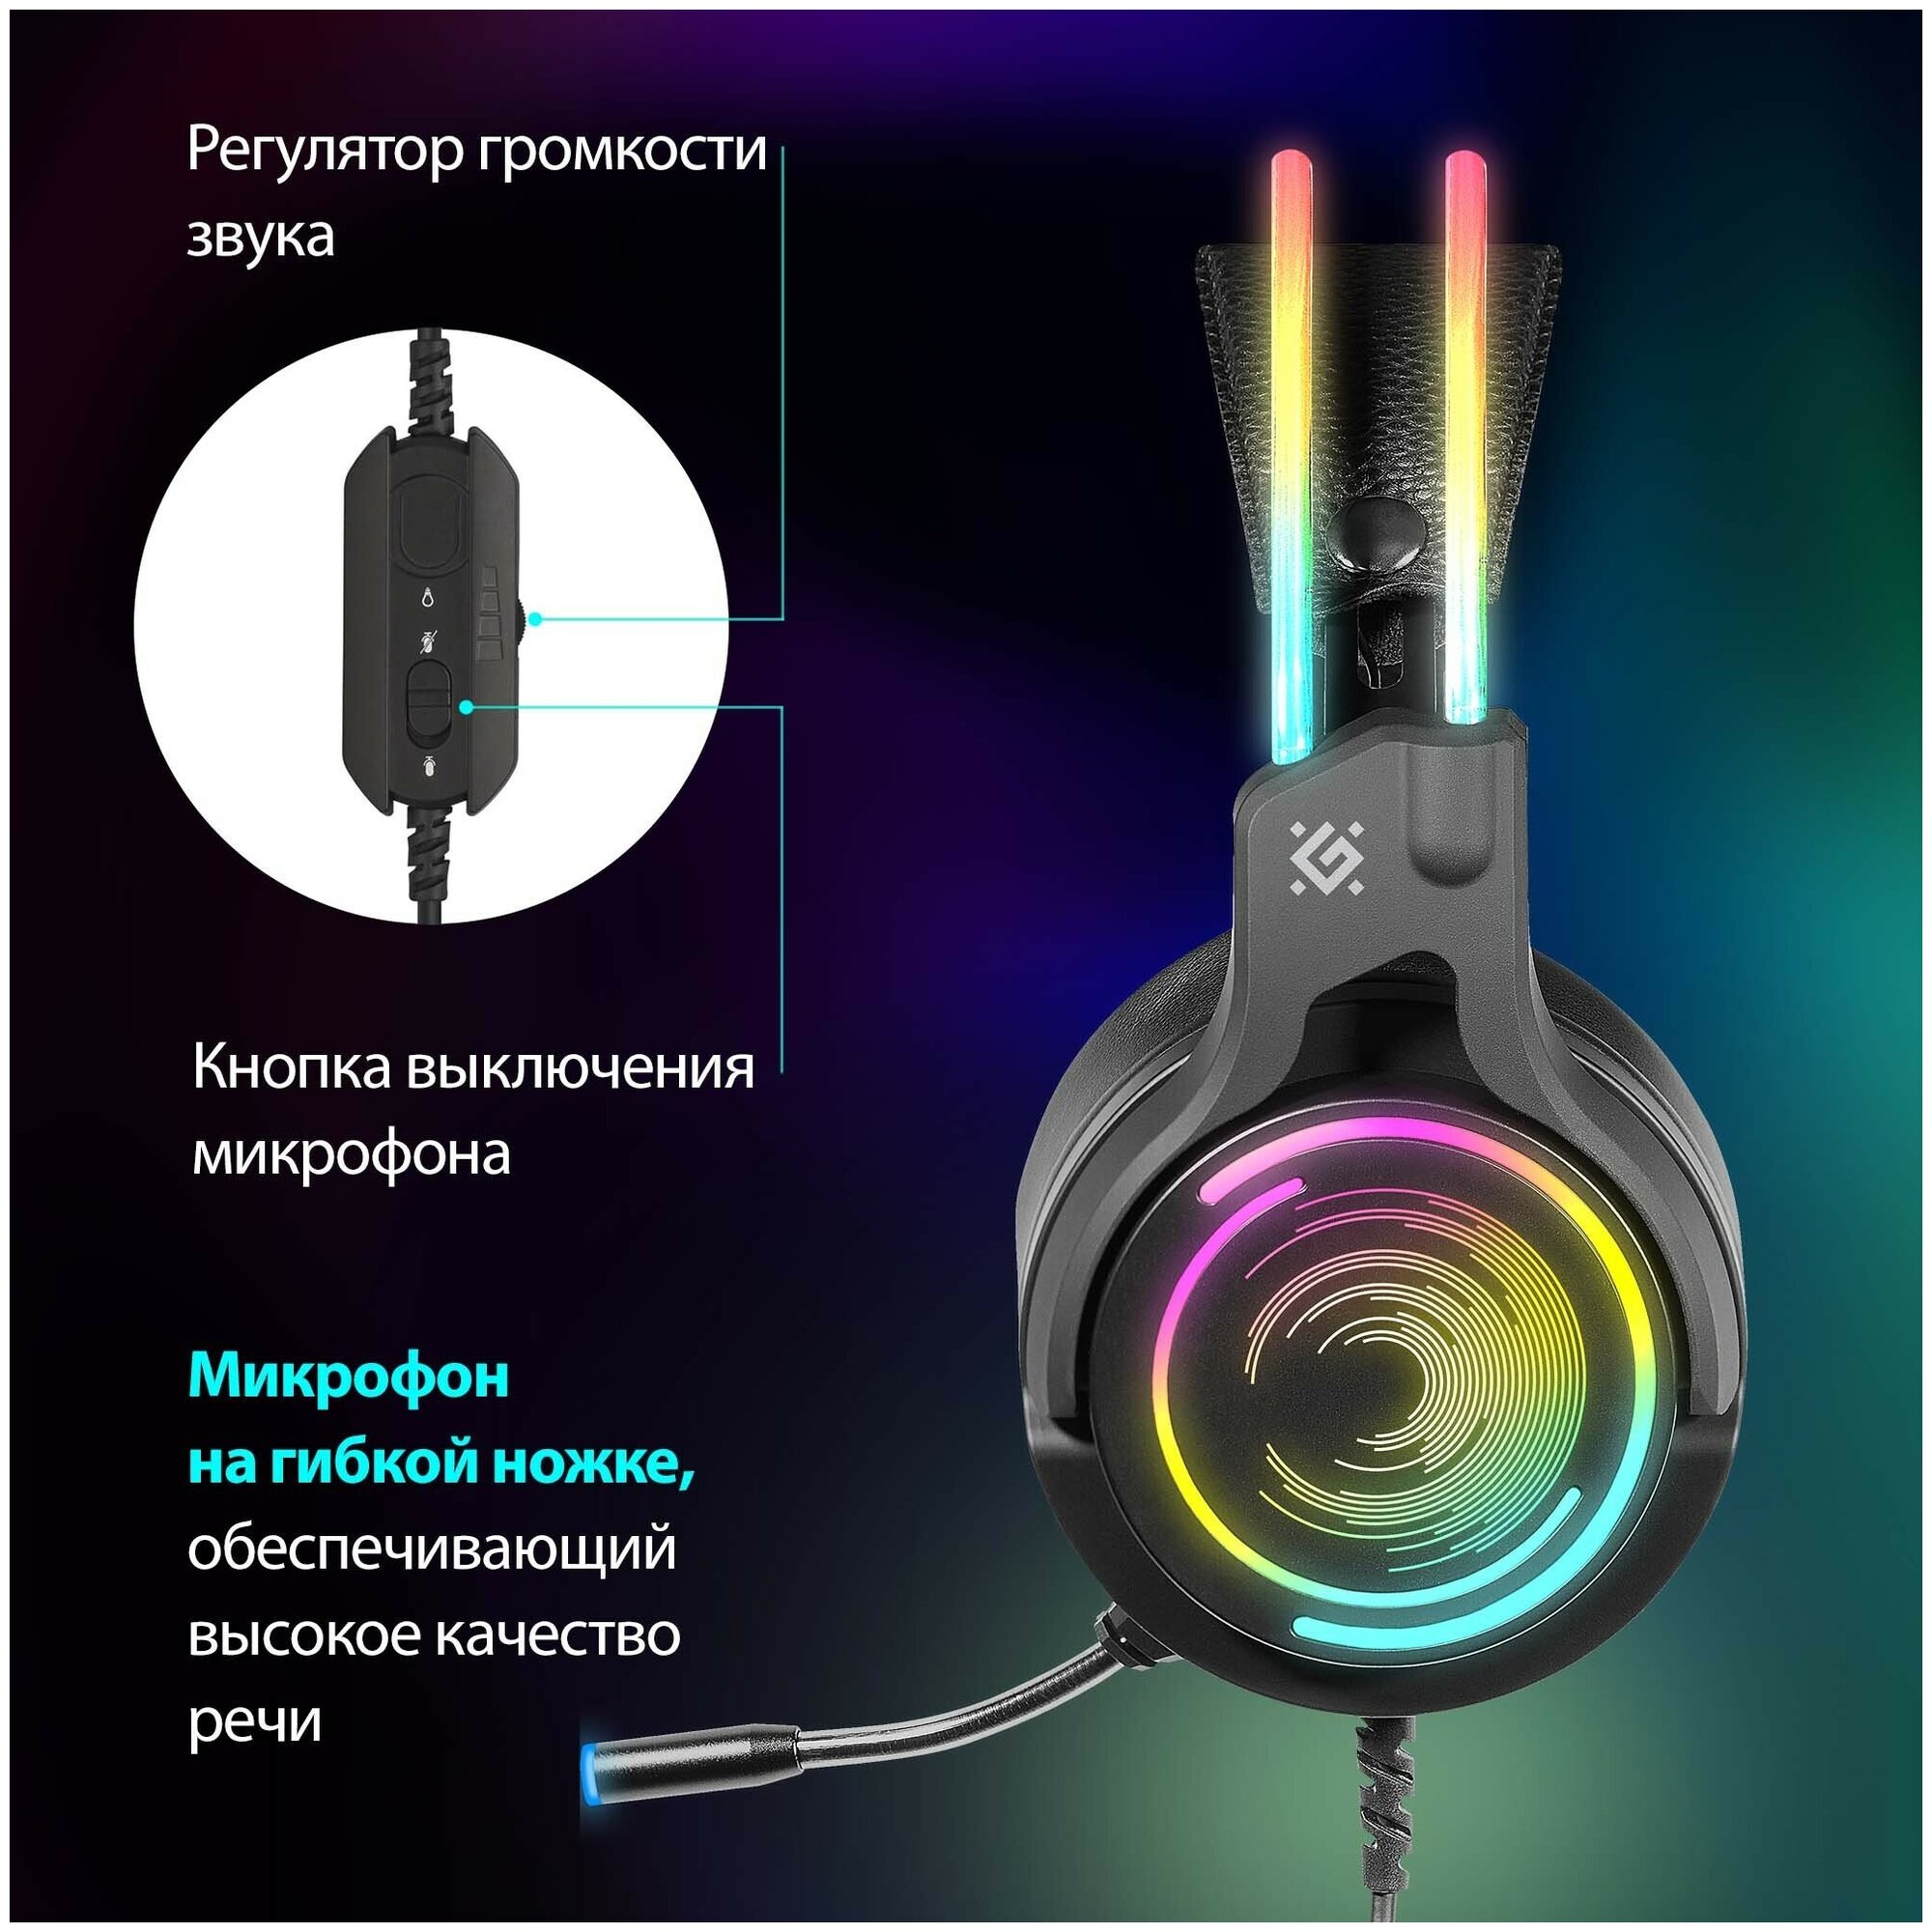 Игровые наушники с микрофоном Defender Cosmo PRO объемный звук 7.1, RGB, 2.1 м